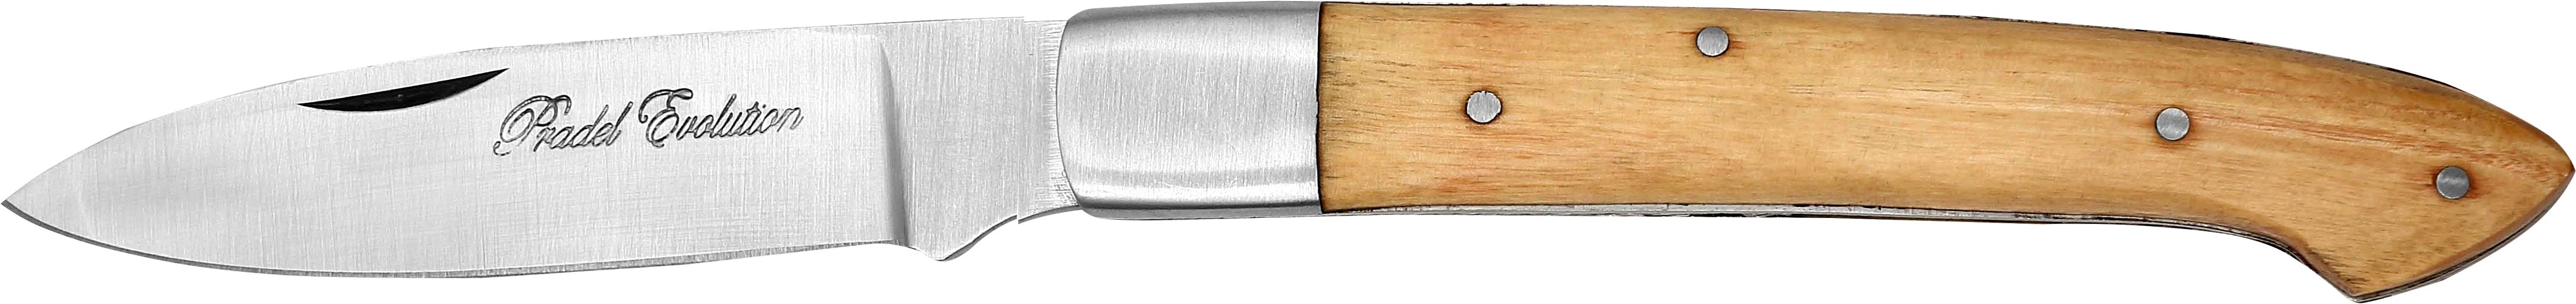 PE - Couteau Le Castelier 12 cm - teck